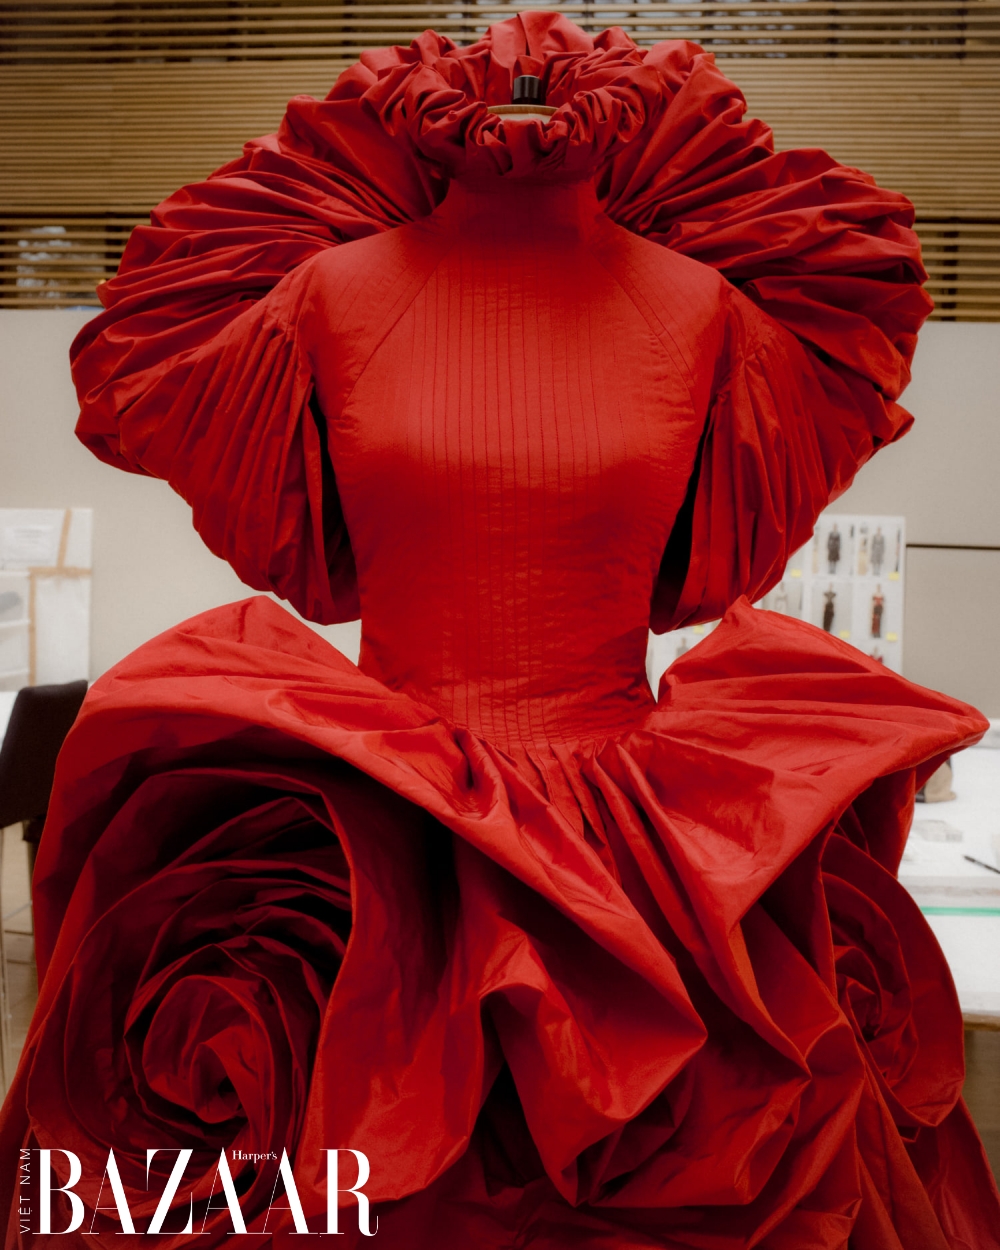 Thiết kế váy hoa hồng đỏ xếp nếp của Alexander McQueen